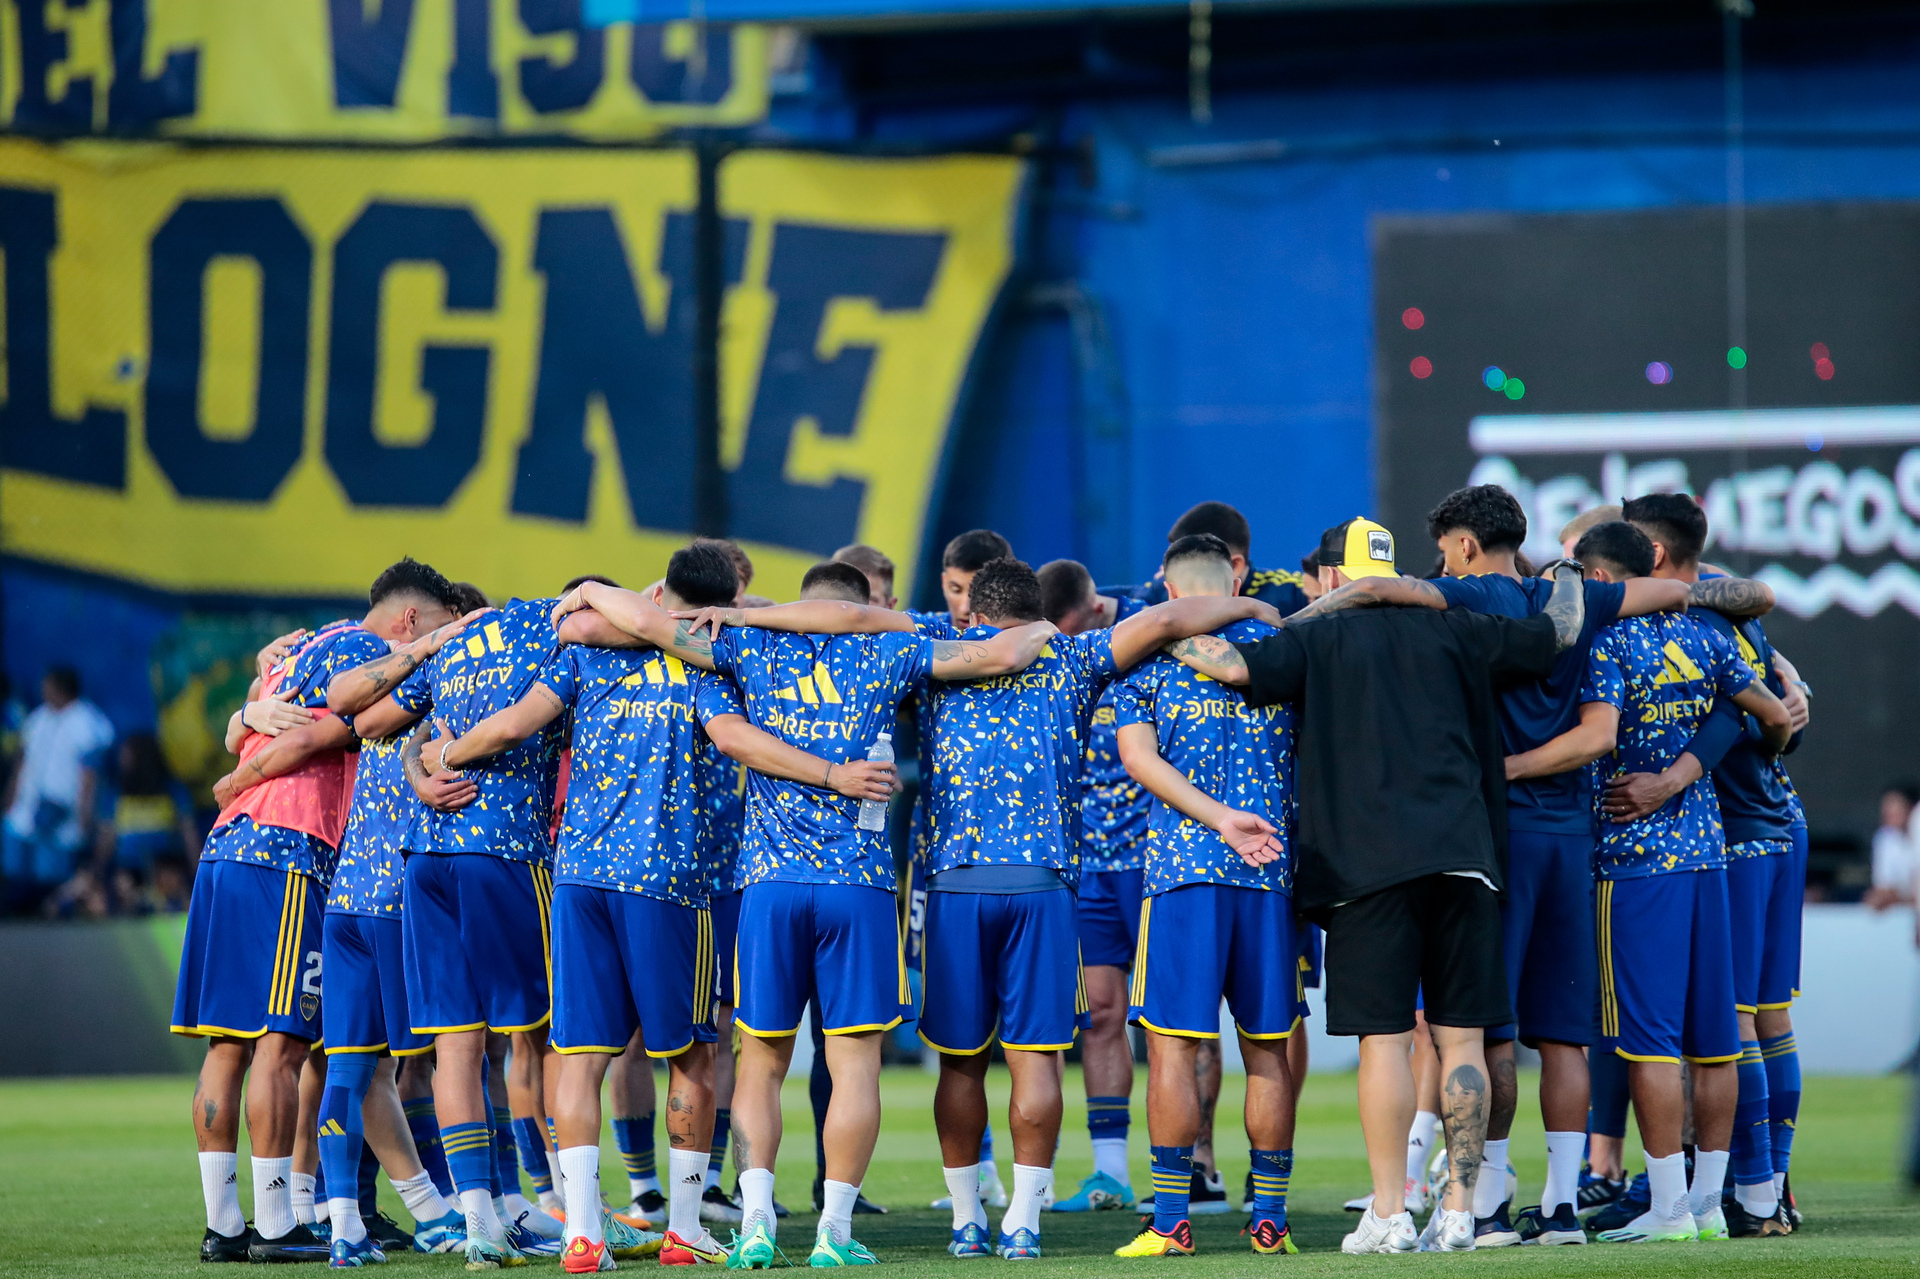 La actual directiva del club de fútbol Boca Juniors apeló este viernes la suspensión de las elecciones previstas para este domingo. (ARCHIVO)